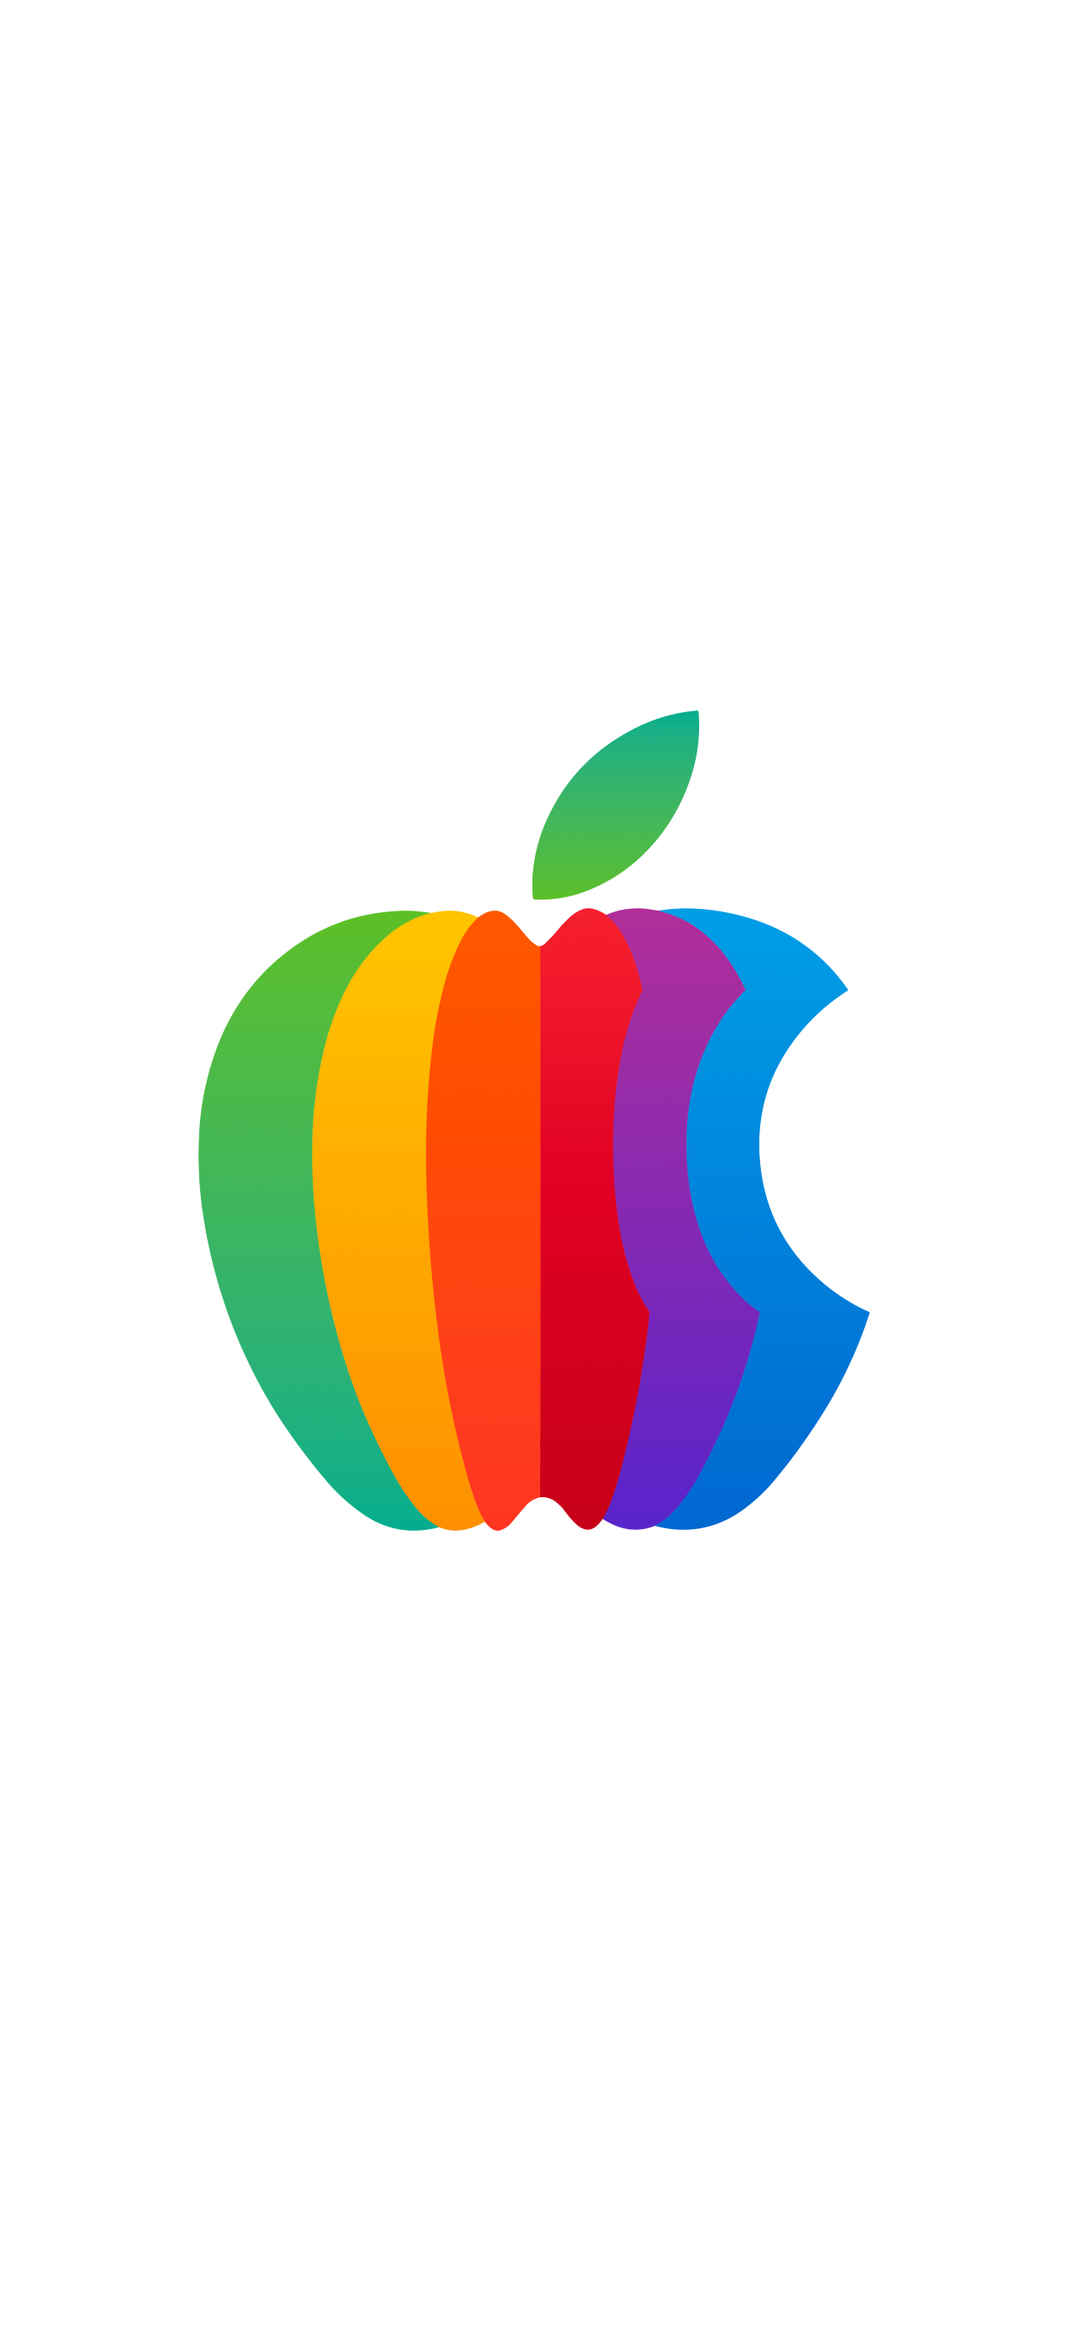 Logo 白色背景Apple彩色手机壁纸